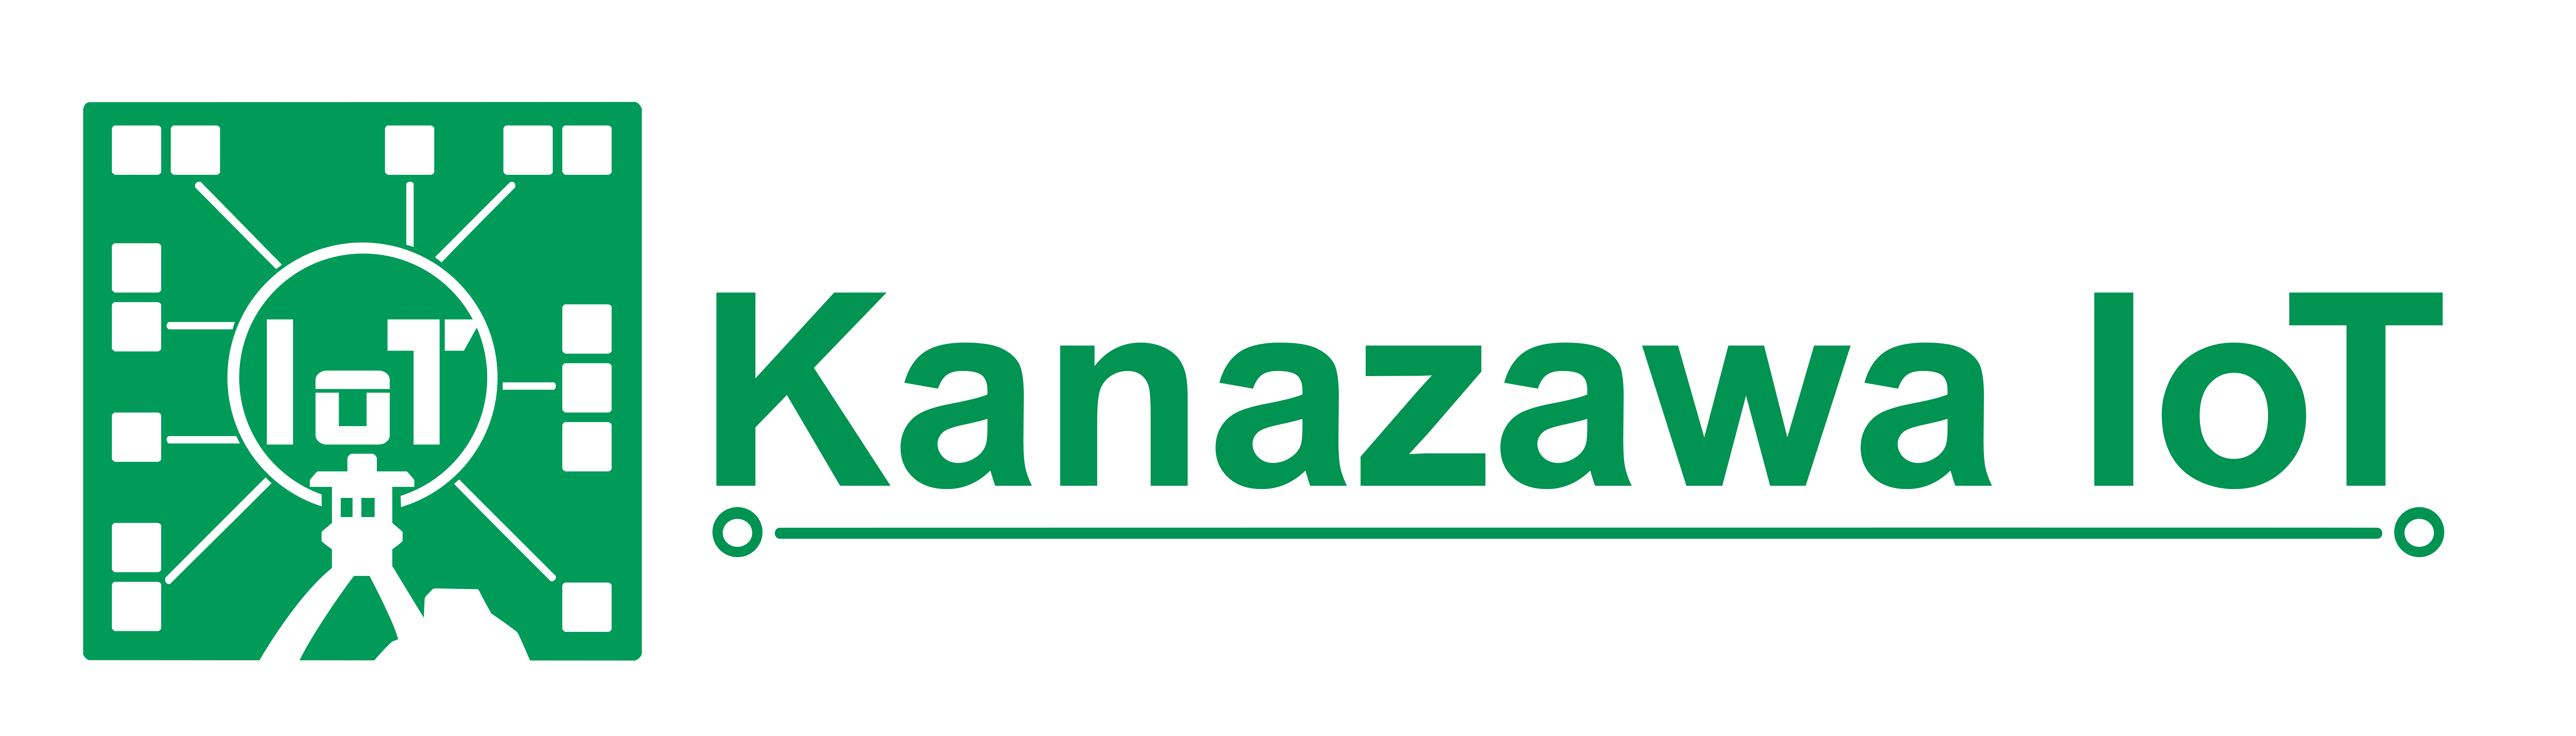 Kanazawa-IoT-banner-green